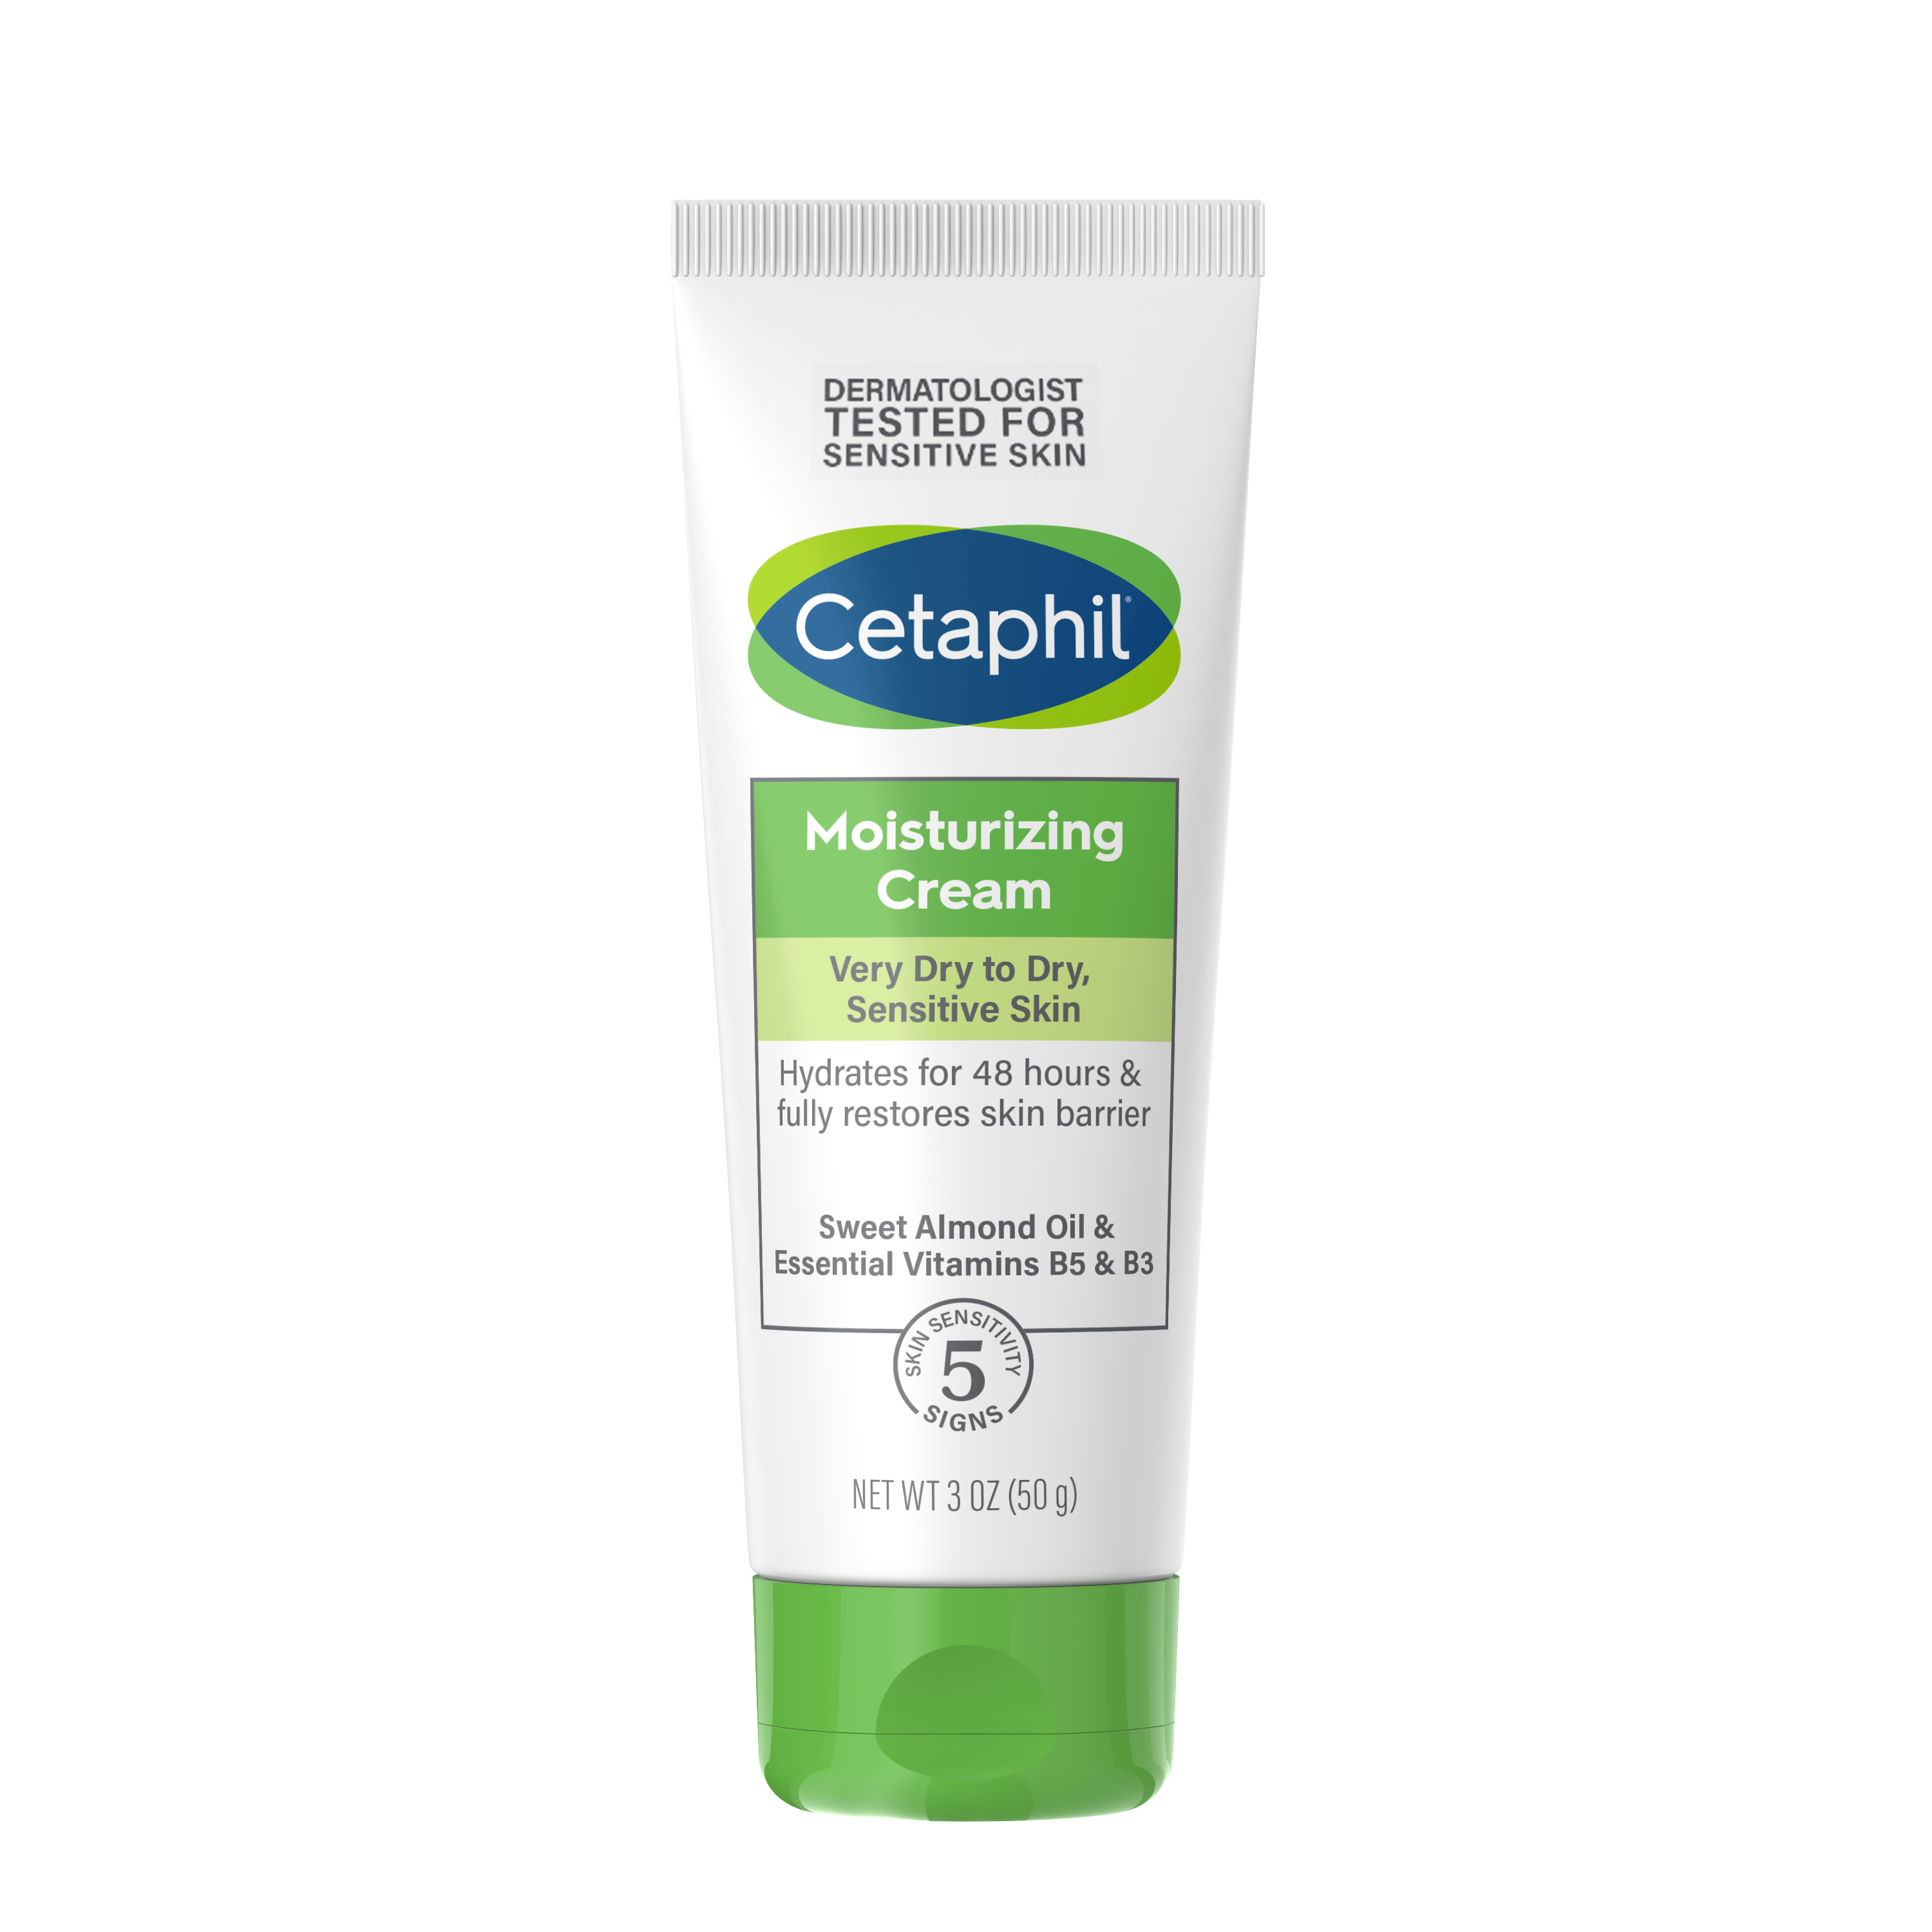 Kem dưỡng ẩm dịu lành cho da nhạy cảm Moisturizing Cream giúp kích thích sản sinh ceramide tự nhiên